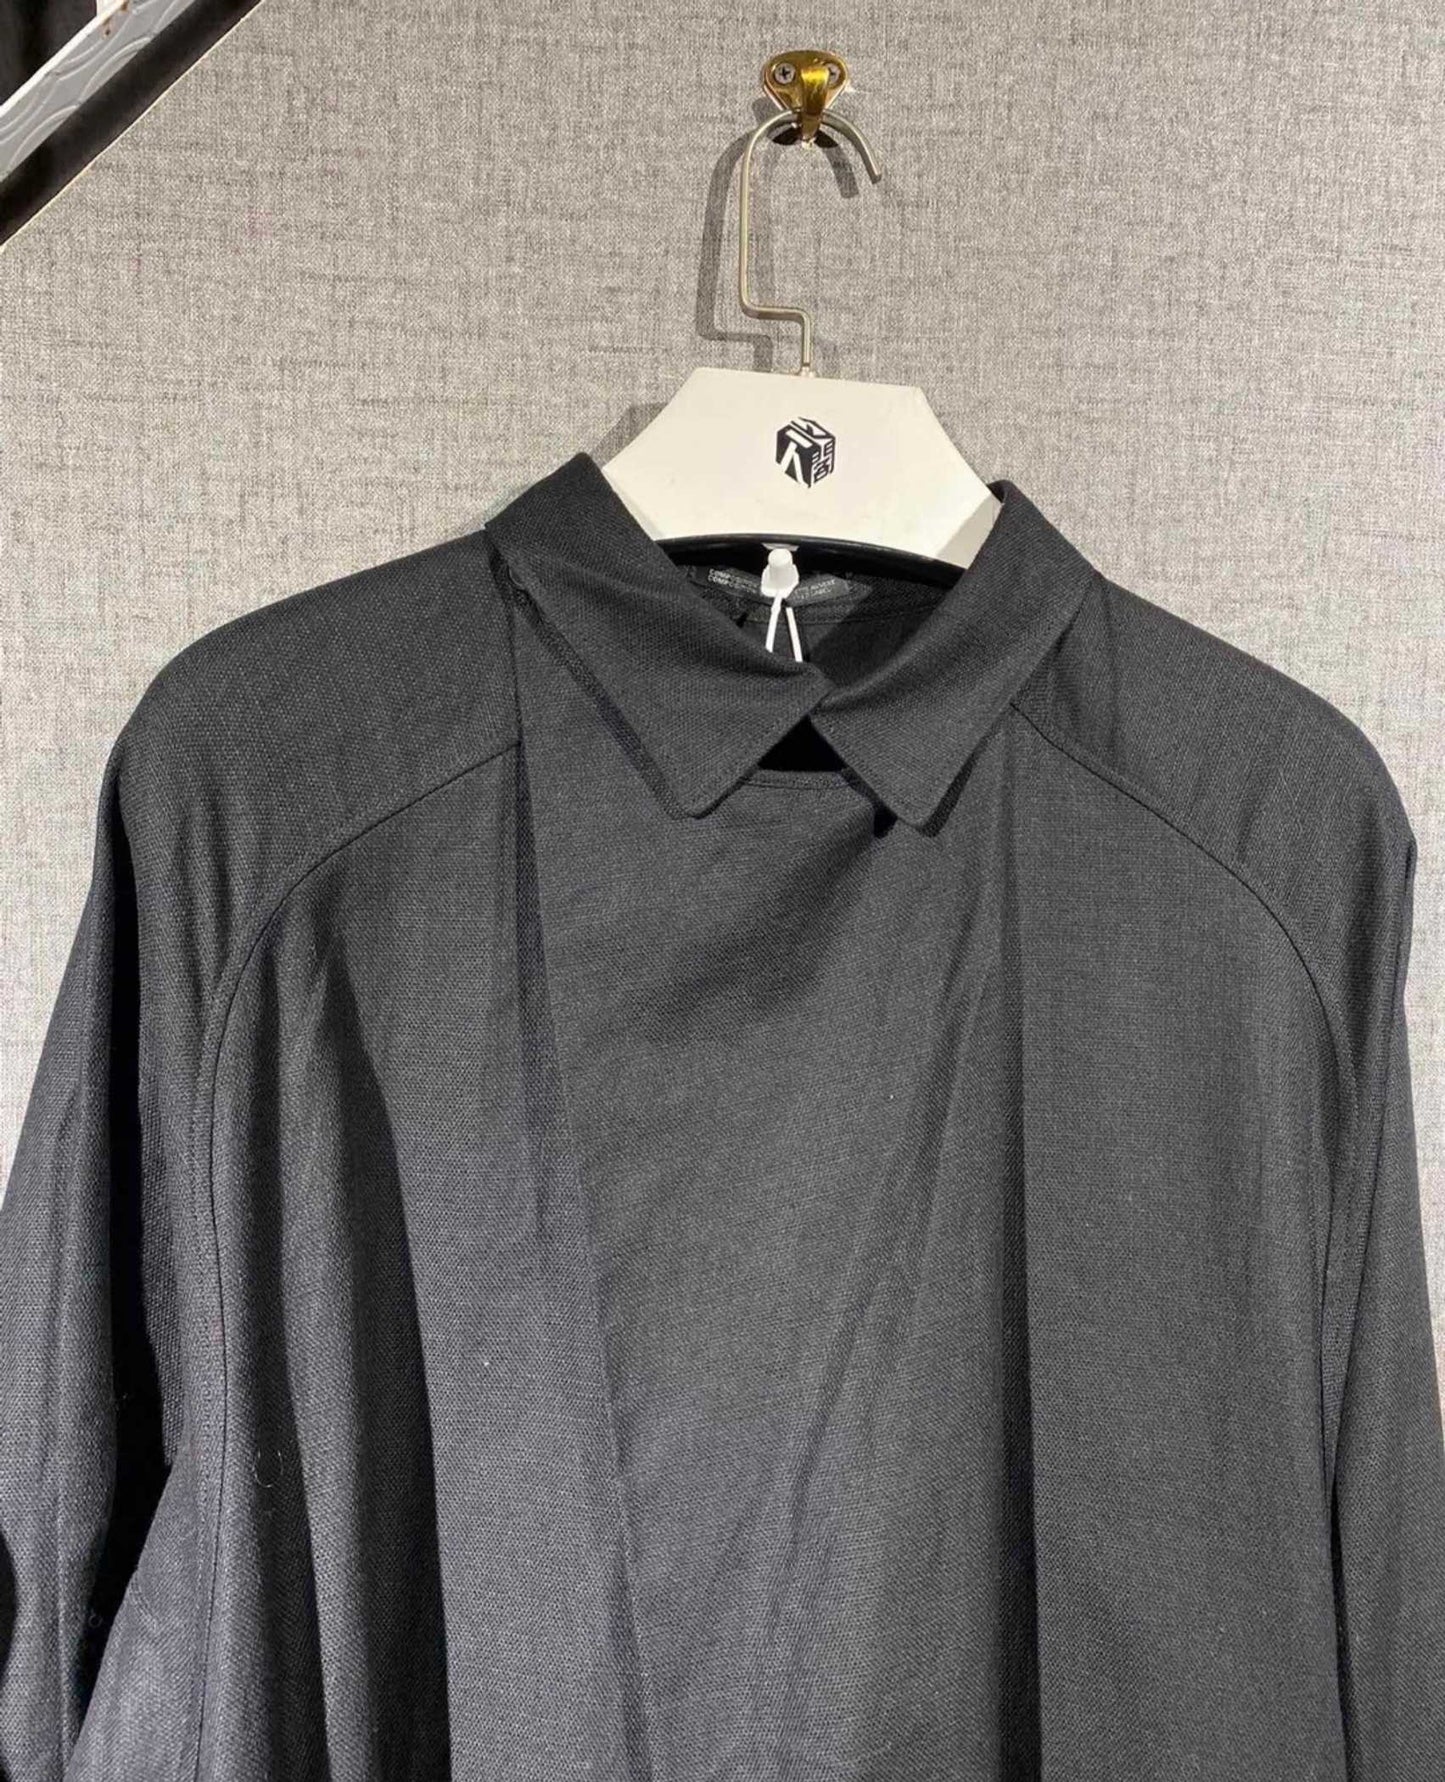 Yohji Yamamoto's shirt